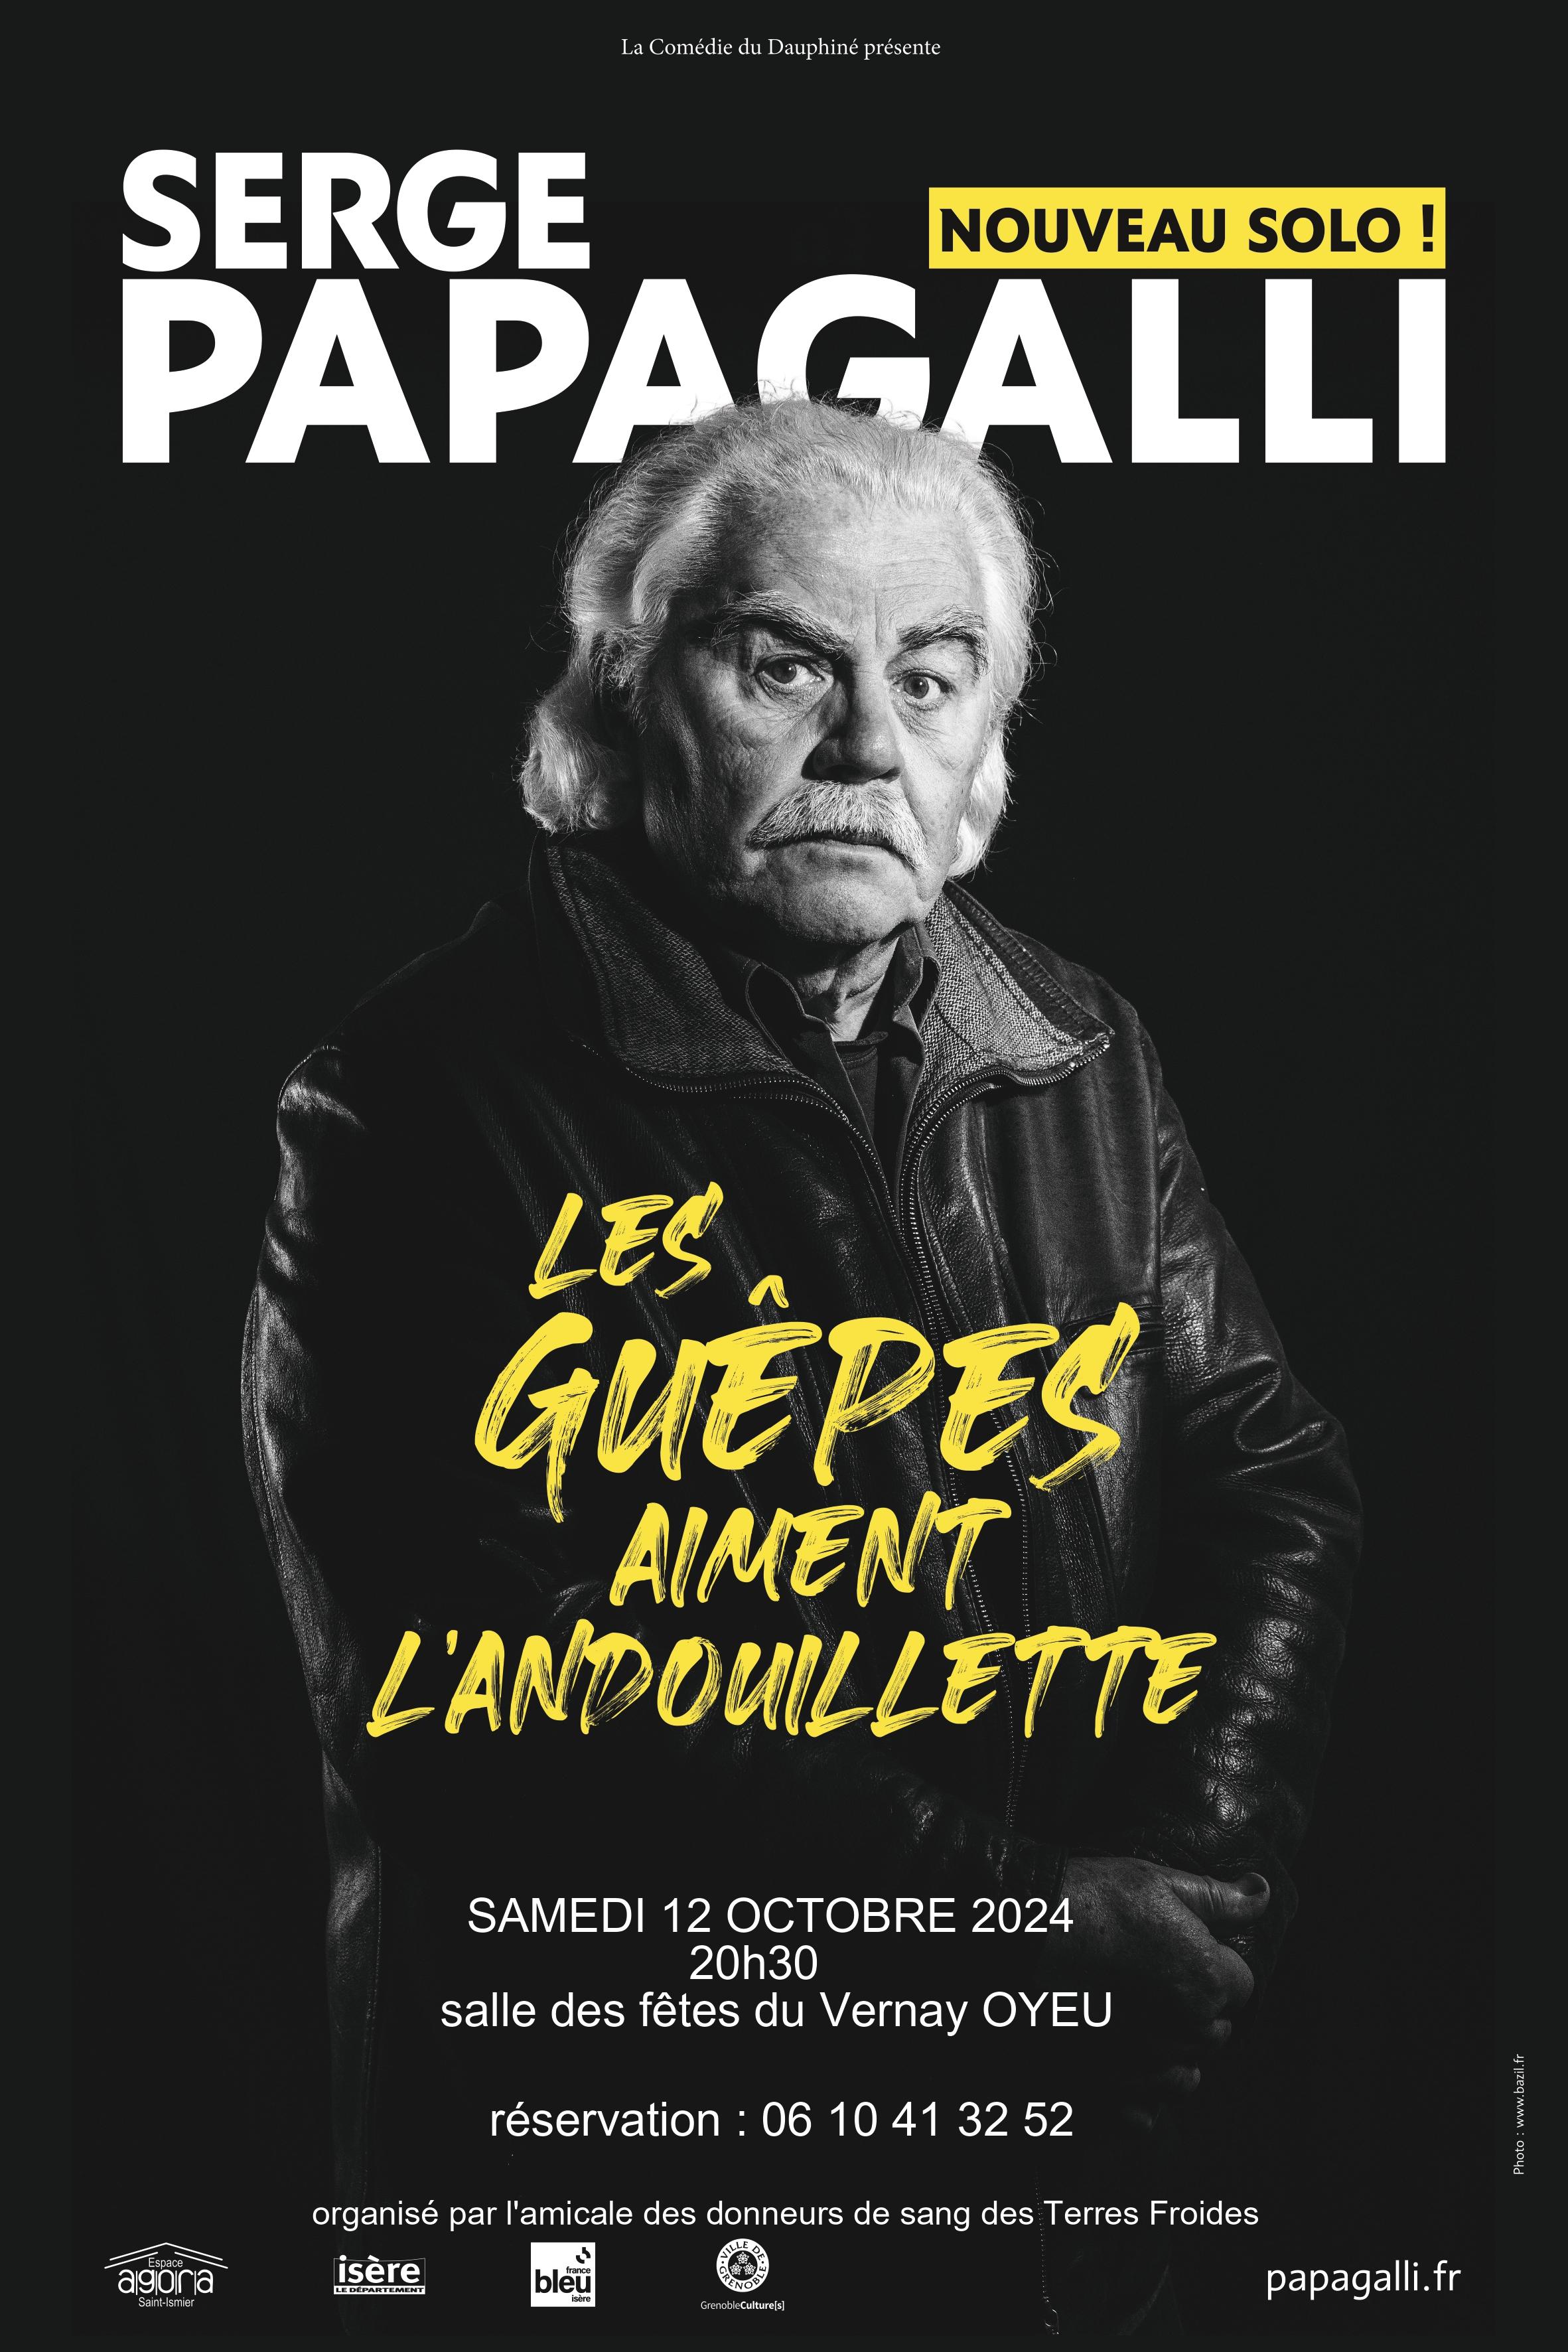 Image de couverture - Spectacle de Serge PAPAGALLI a la salle des fêtes OYEU le 12 Octobre 2024